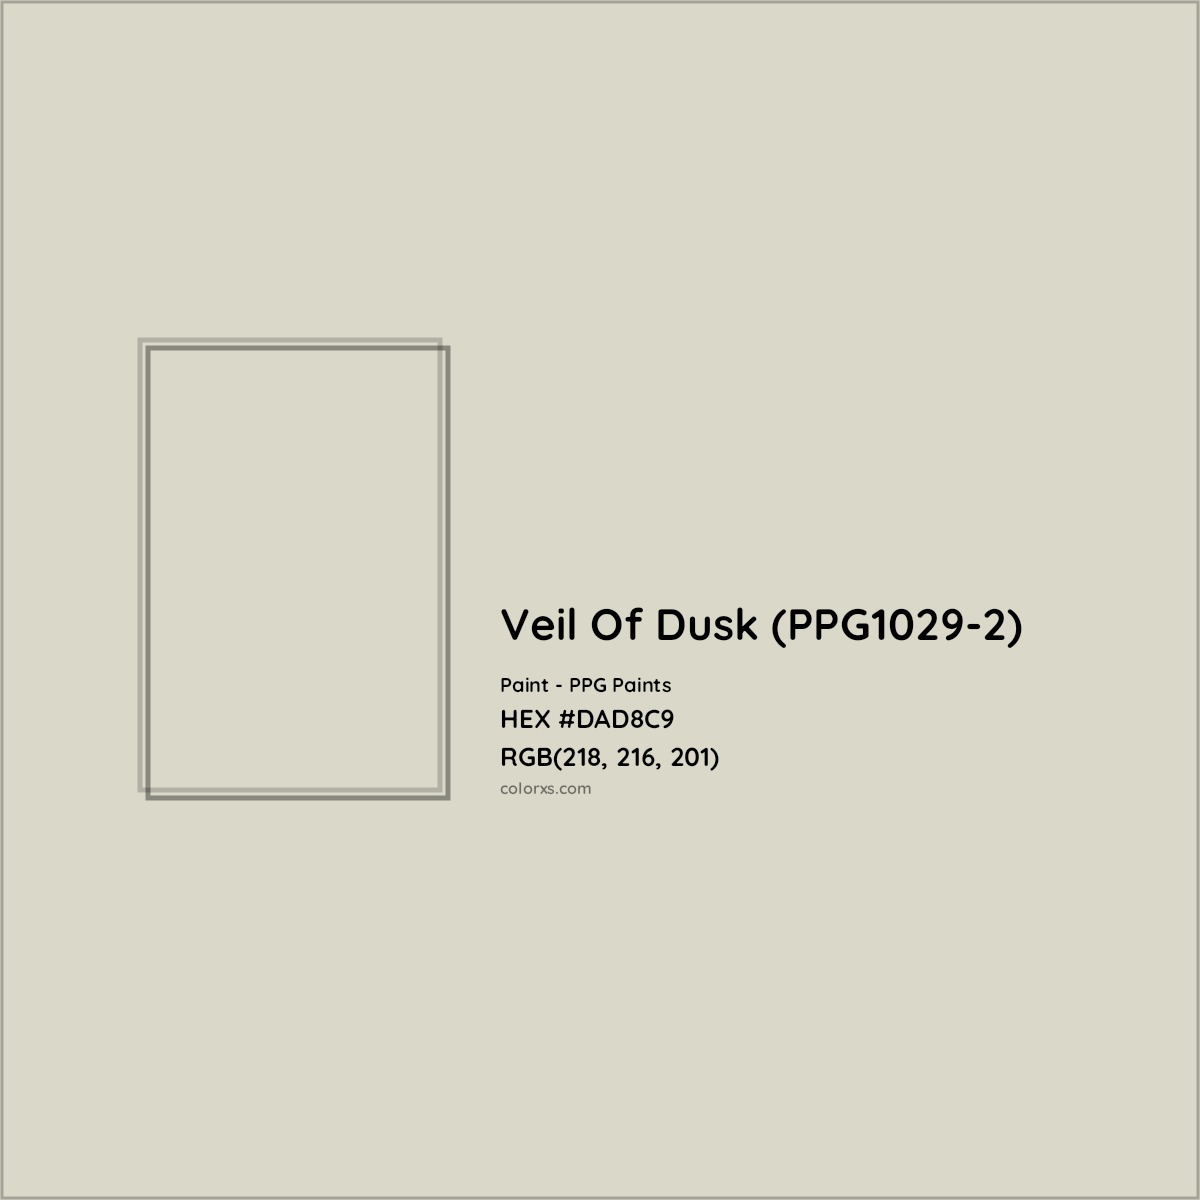 HEX #DAD8C9 Veil Of Dusk (PPG1029-2) Paint PPG Paints - Color Code